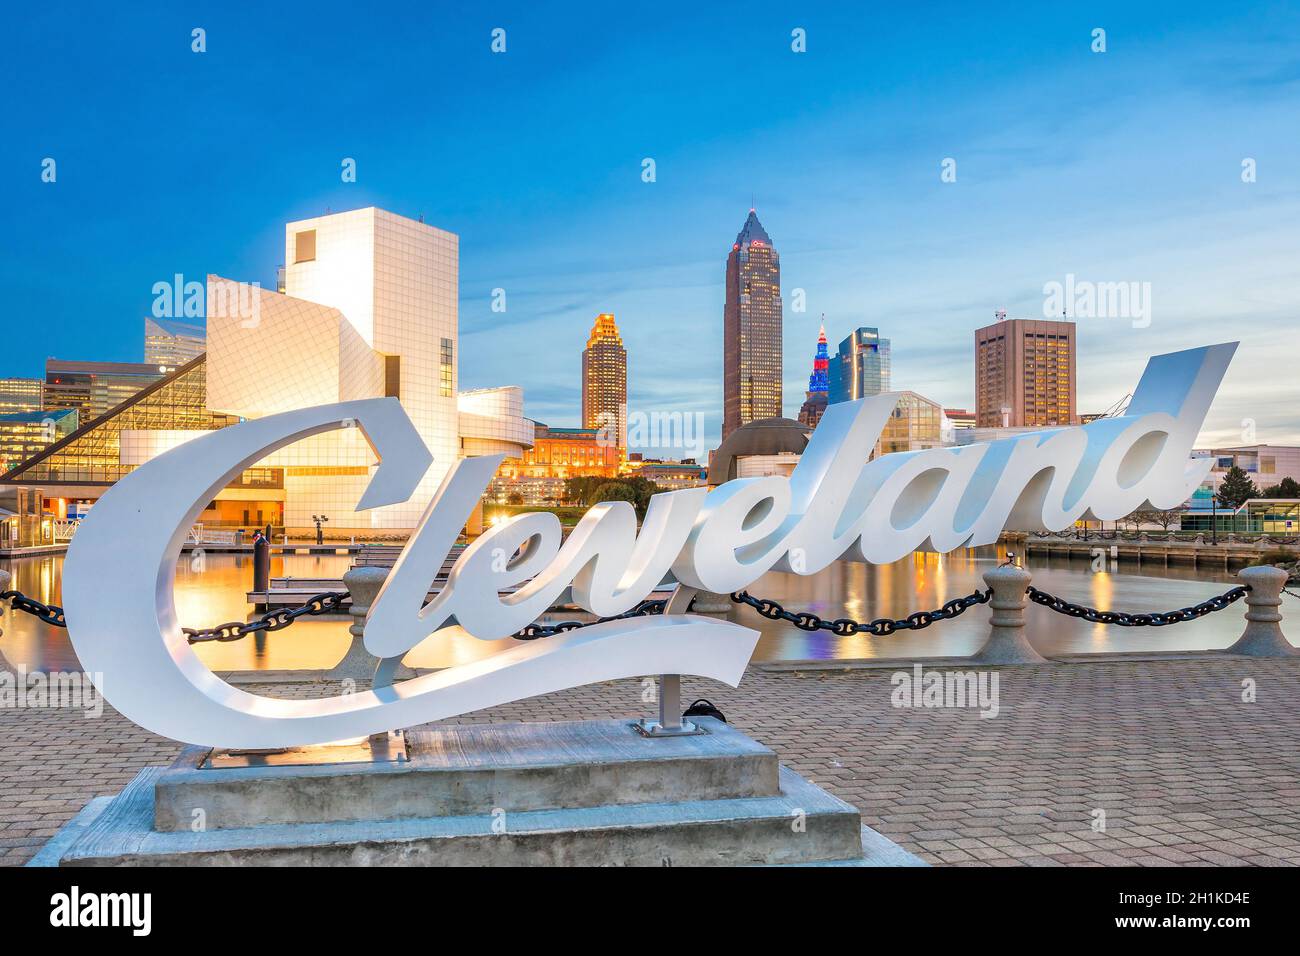 CLEVELAND, OH - OTTOBRE 31: Skyline del centro di Cleveland dal lungolago in Ohio USA il 31 Ottobre 2016 Foto Stock